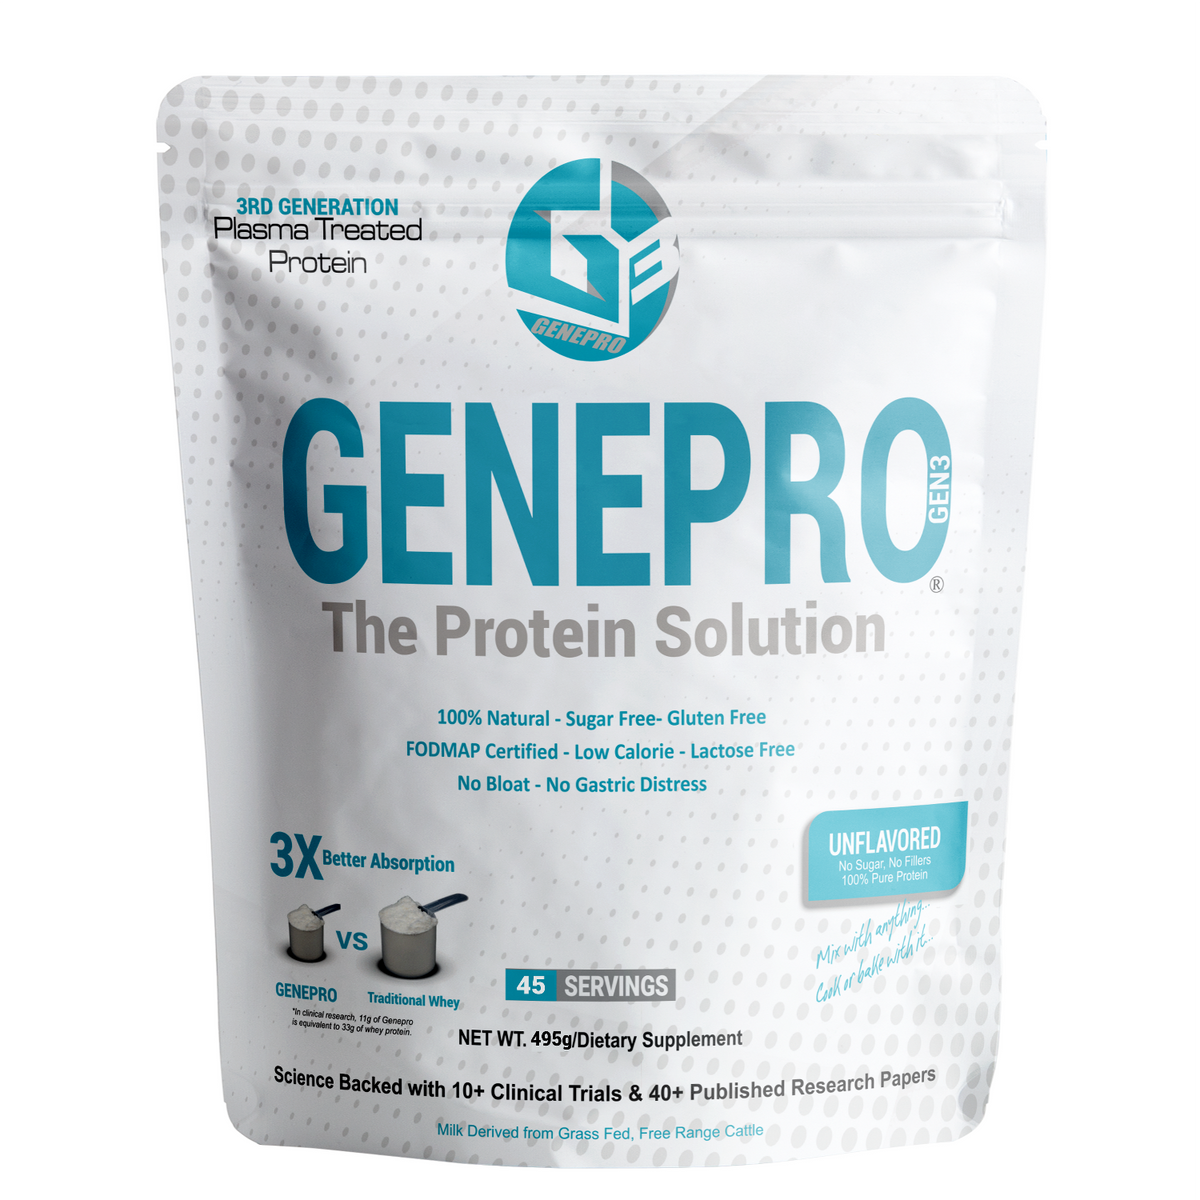 GENEPRO Next Generation Unflavored Premium Protein Powder